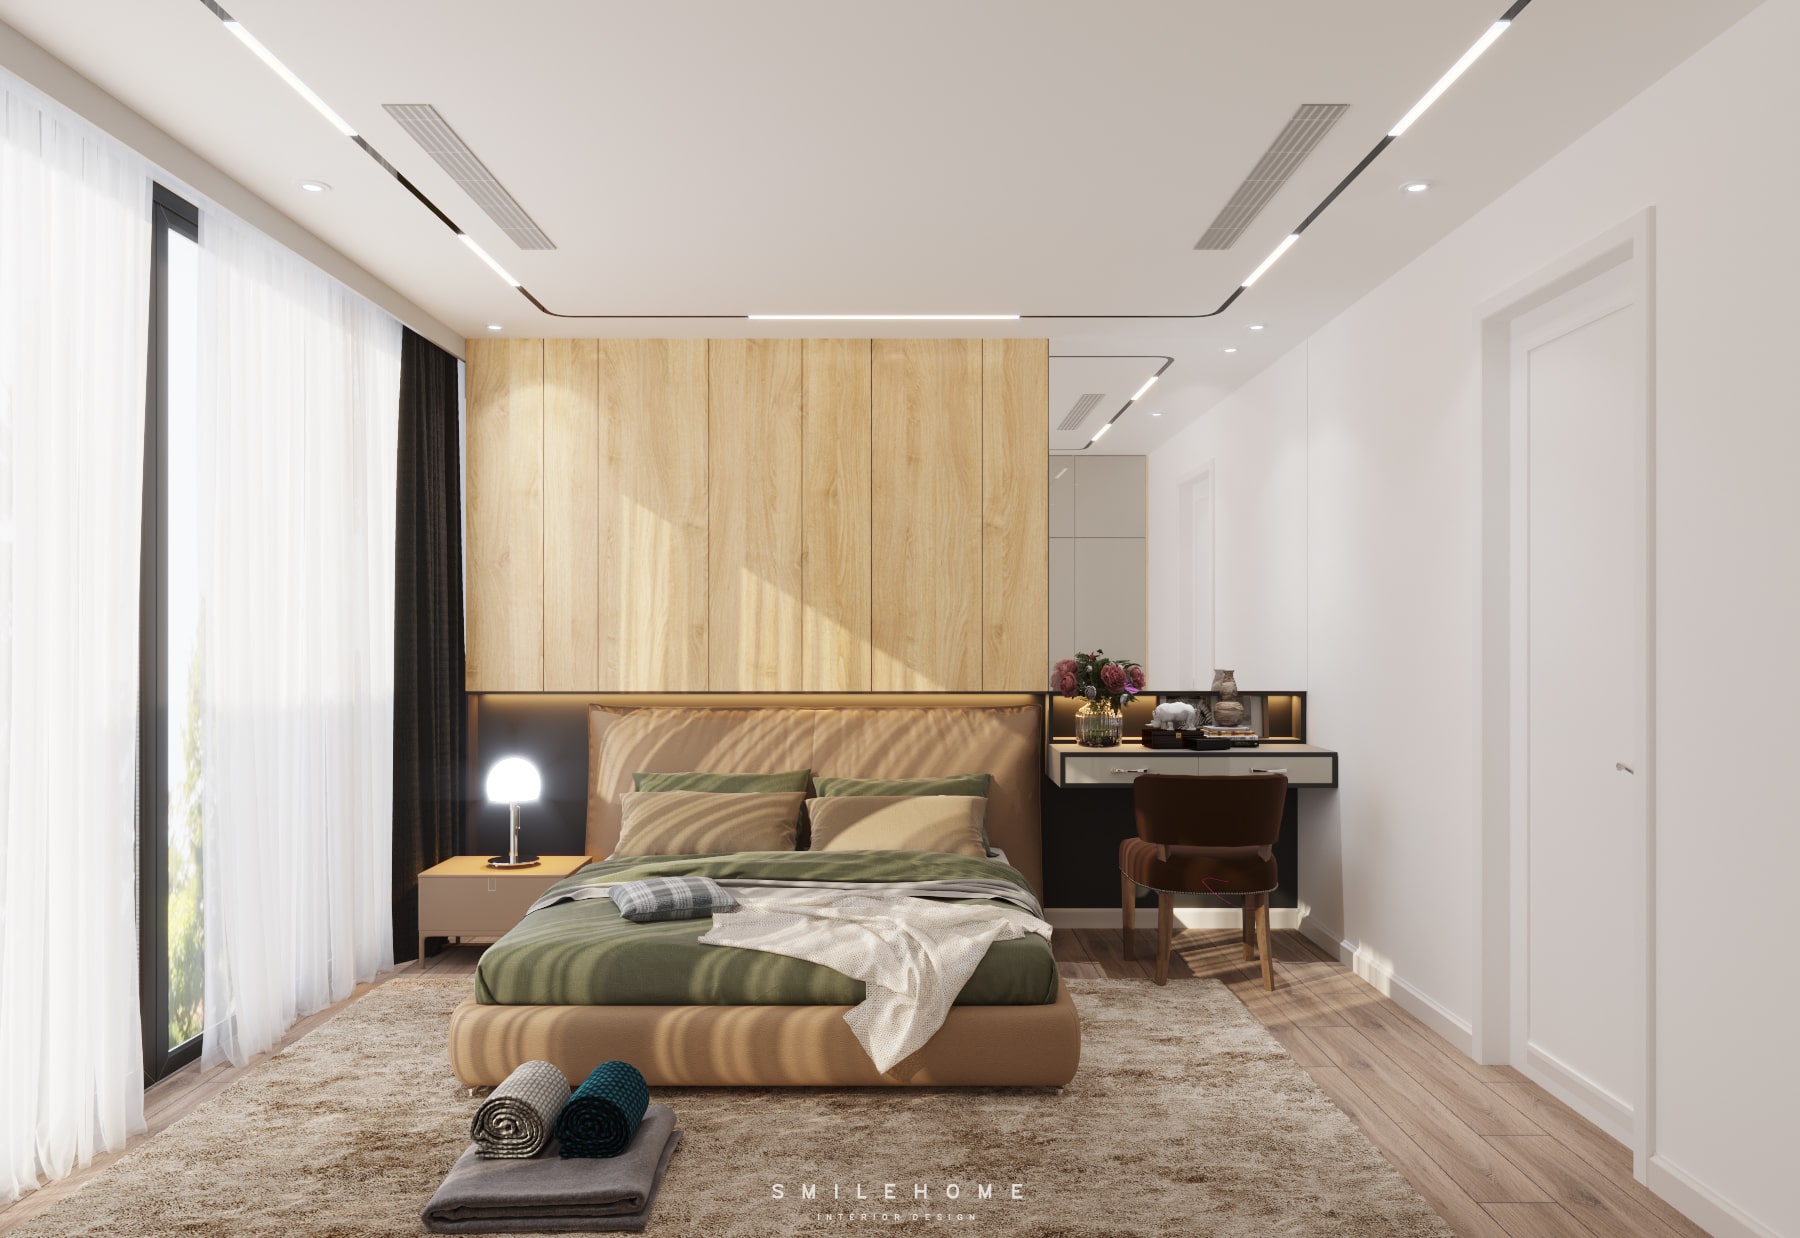 Tông trắng kết hợp với sàn gỗ, thảm da tạo nên không gian đầy sức sống cho nơi ngủ.